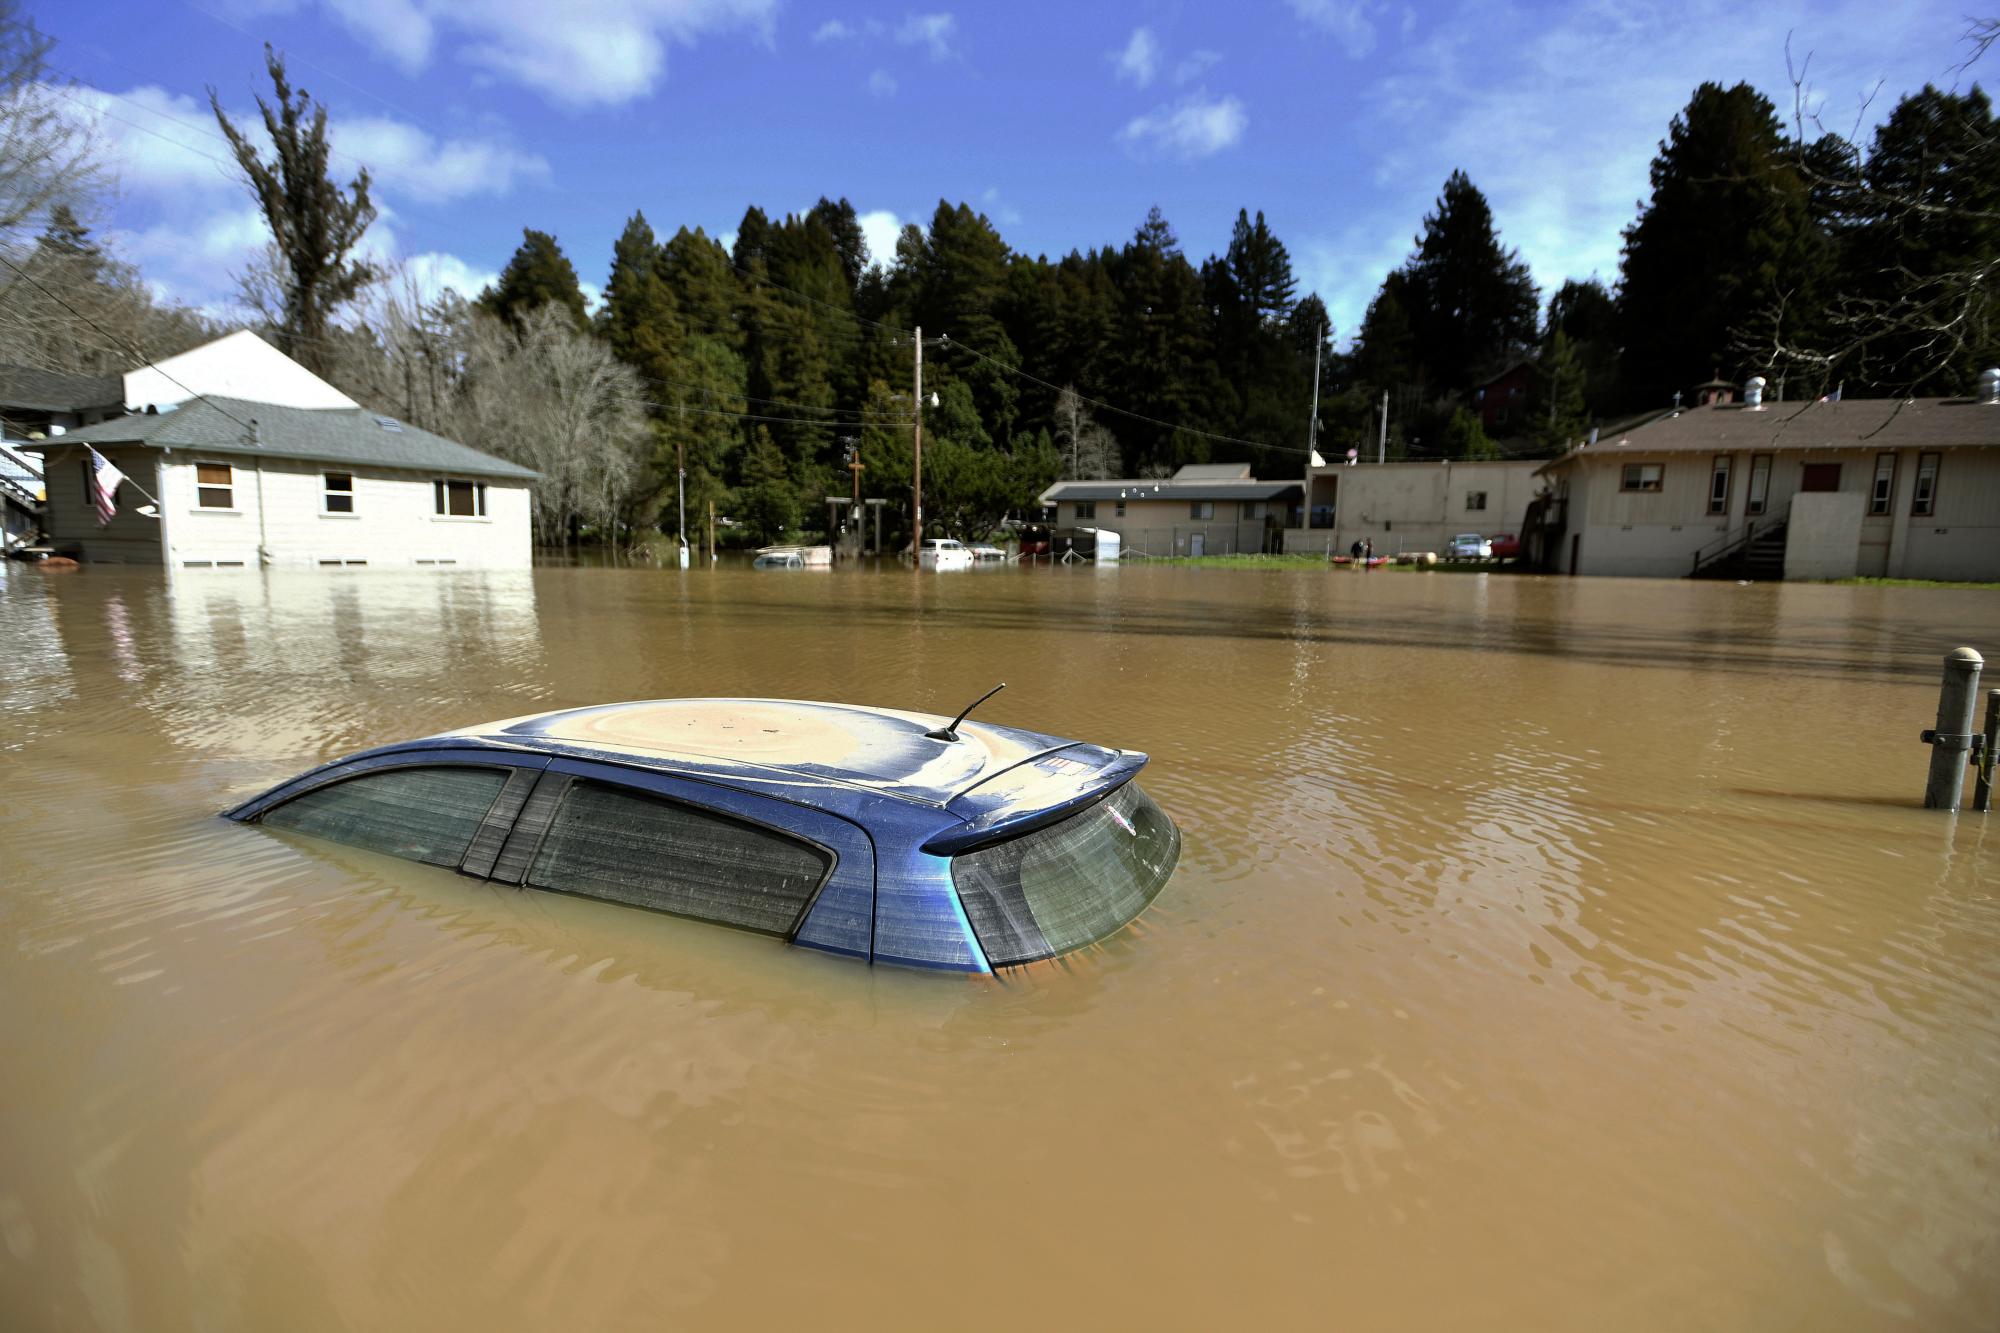 El jueves 28 de febrero de 2019, se ve un automóvil sumergido en las aguas de la inundación del río Russian que se desborda en la ciudad de Guerneville, California. El río Russian en el condado de Sonoma alcanzó los 14 pies (14 metros) la noche del miércoles. Inundando unos 2.000 edificios.